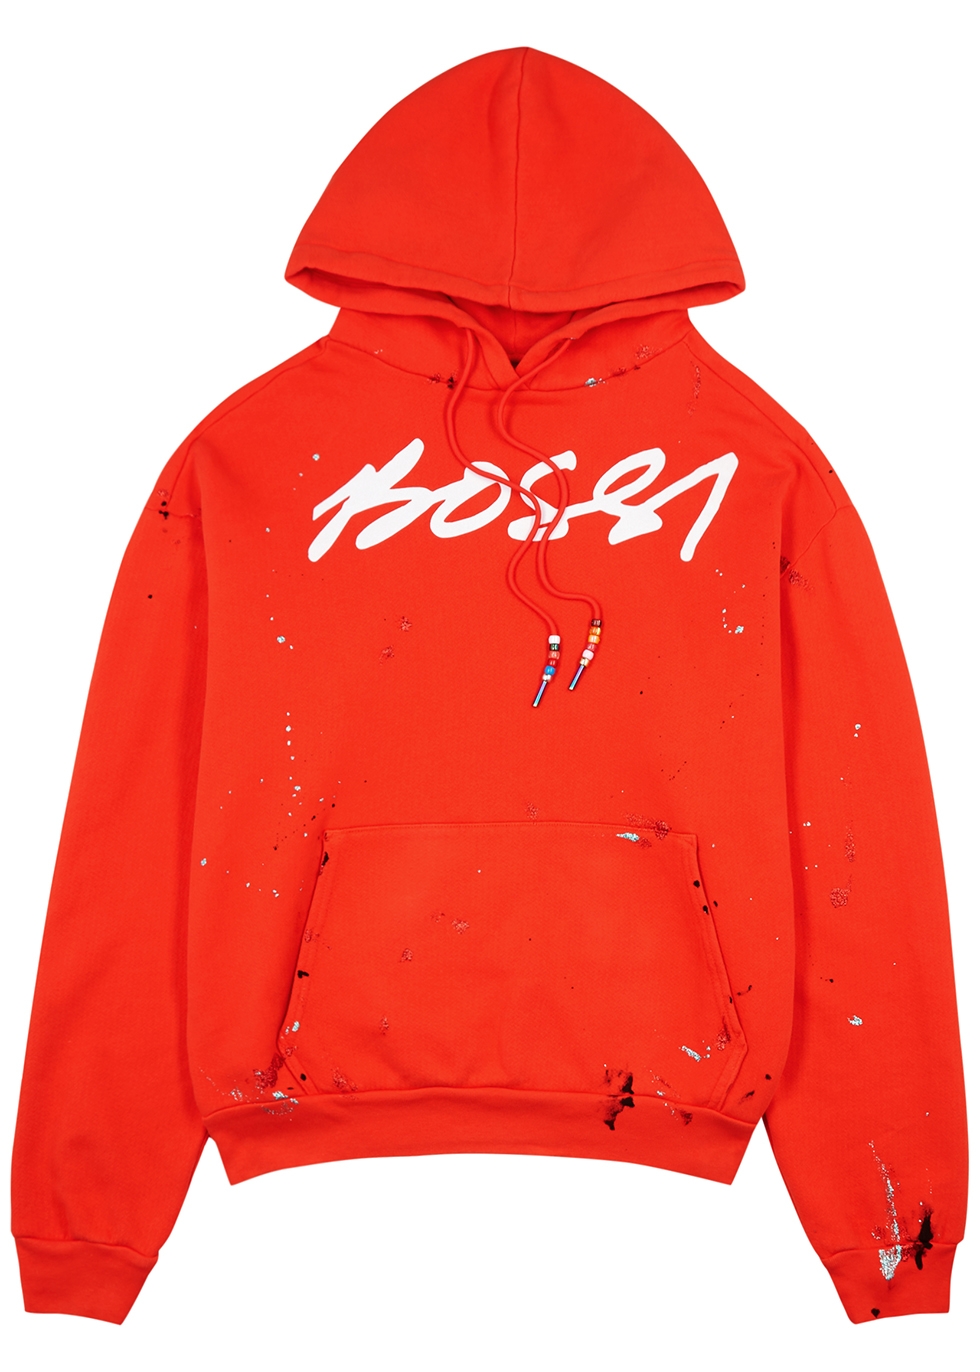 BOSSI Sportswear Red logo hooded cotton sweatshirt